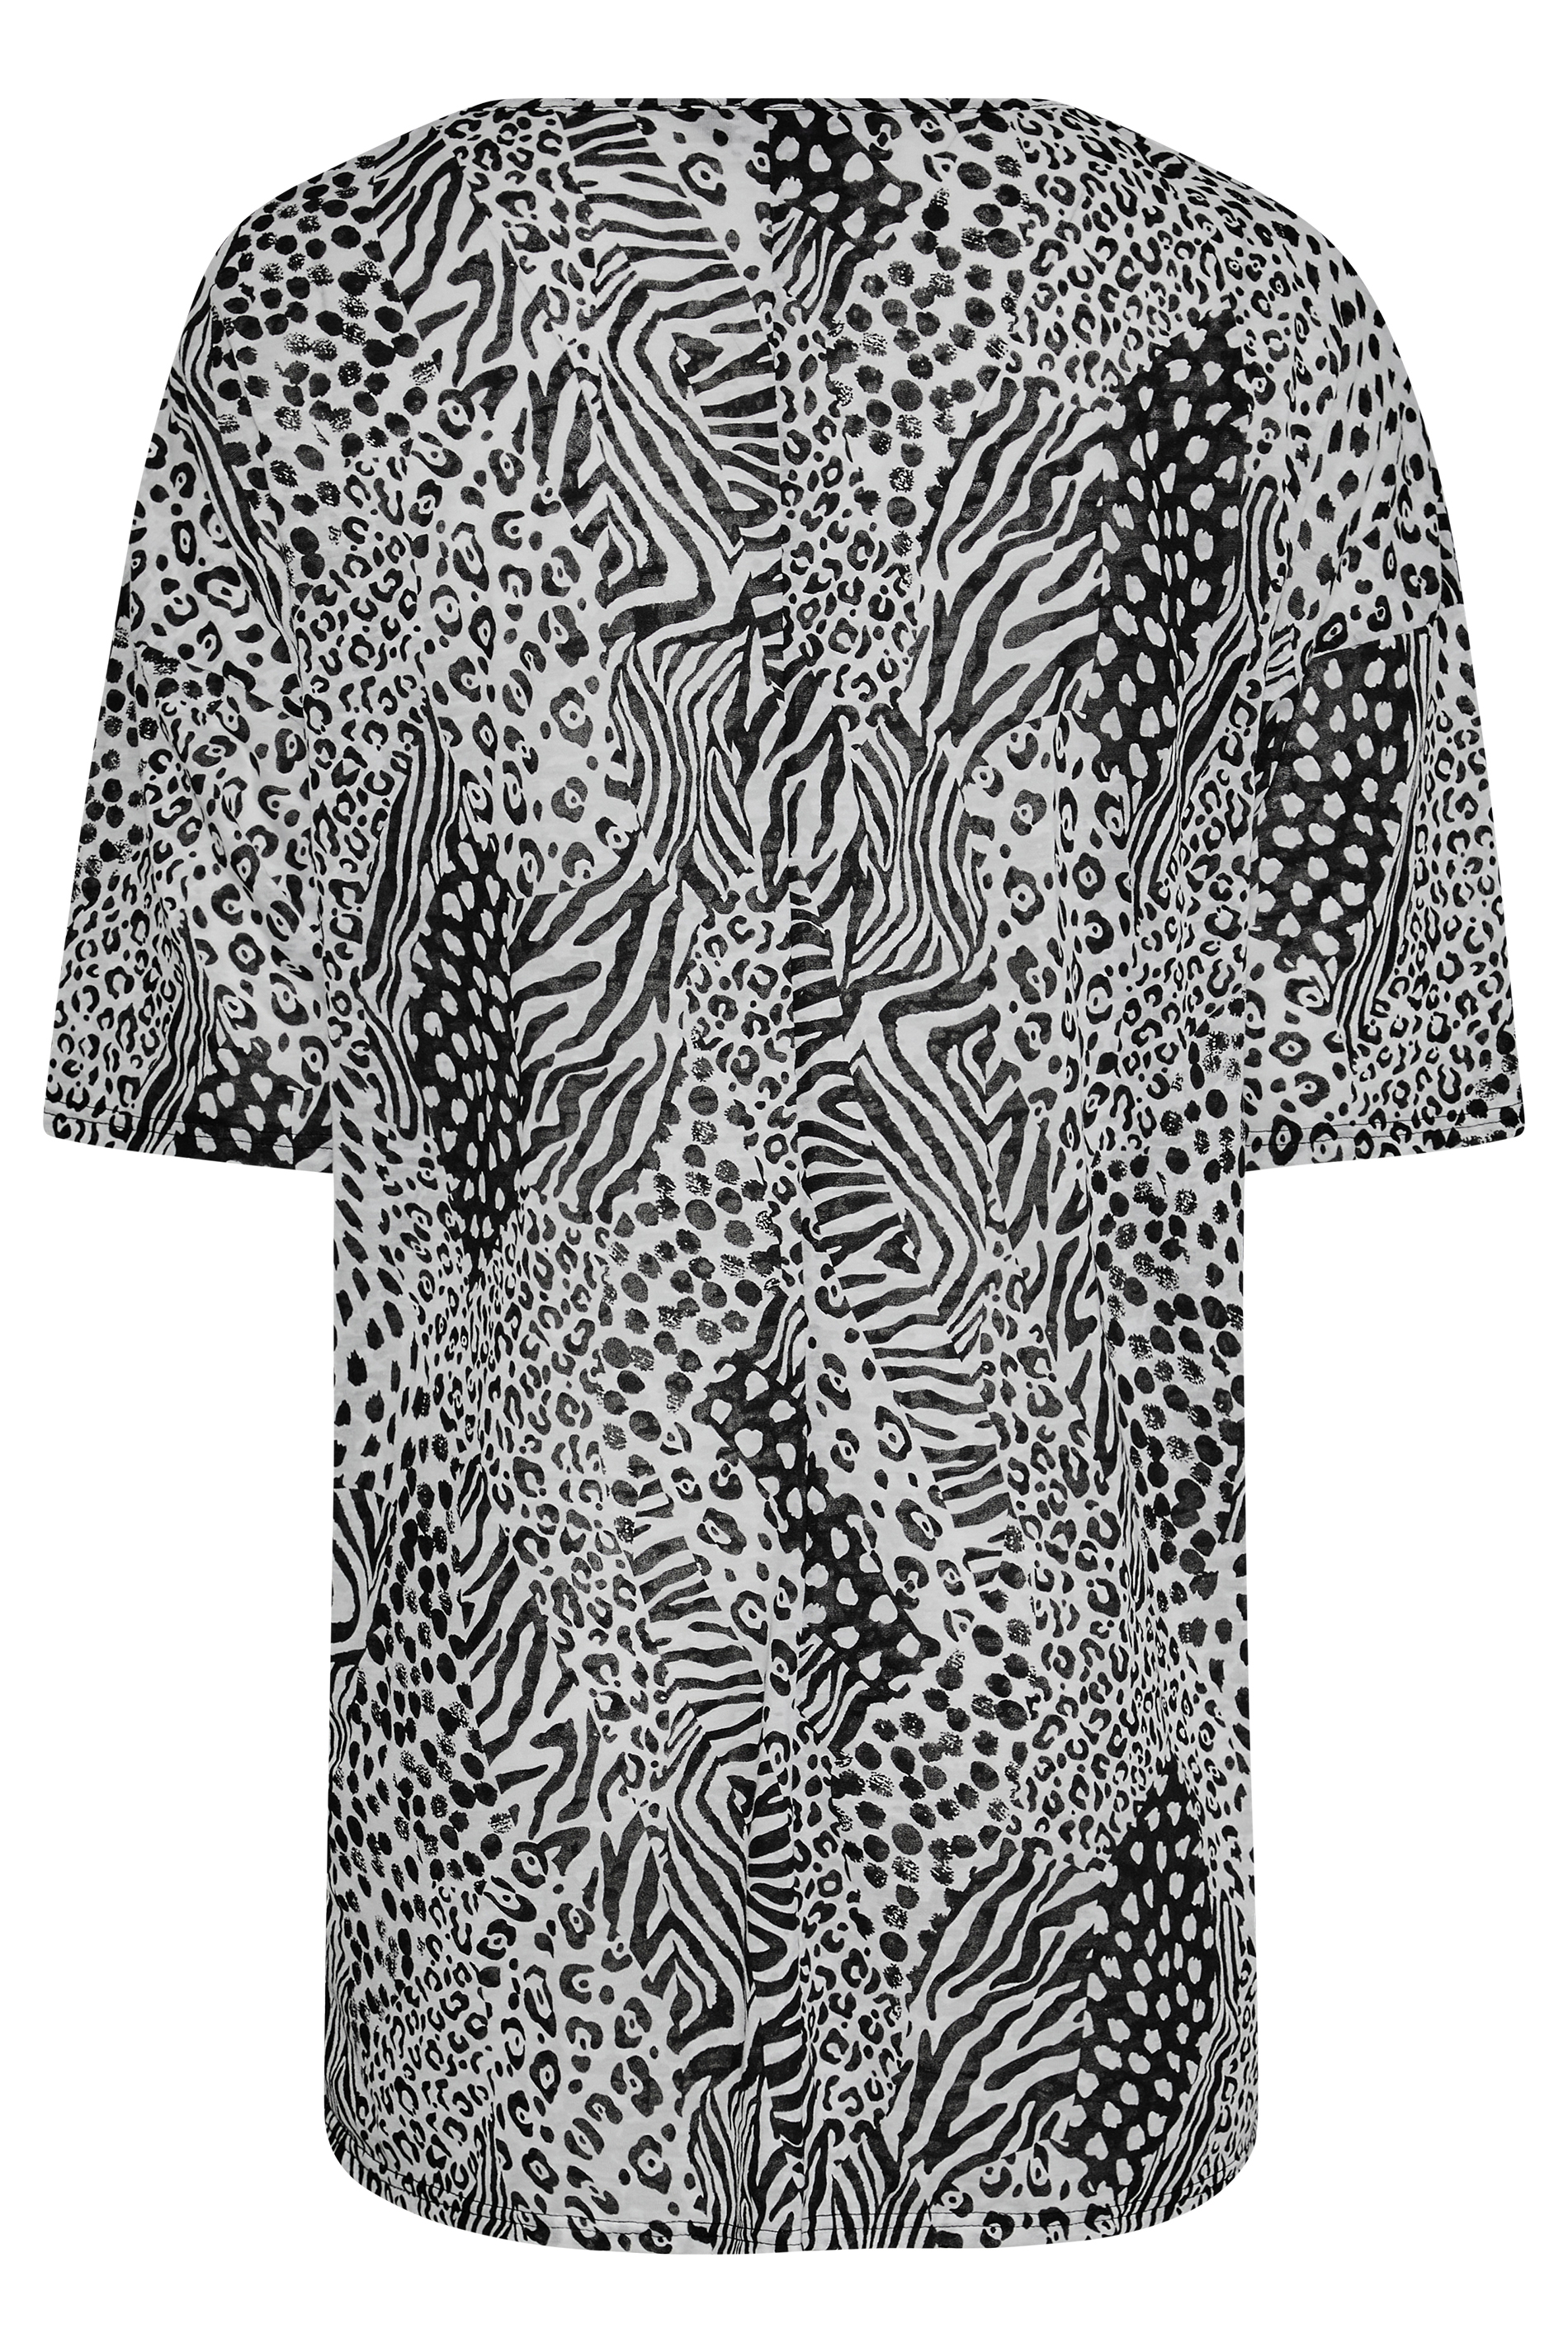 Grande taille  Tops Grande taille  T-Shirts | T-Shirt Noir & Blanc Imprimé Animal en Oversize - DT17279